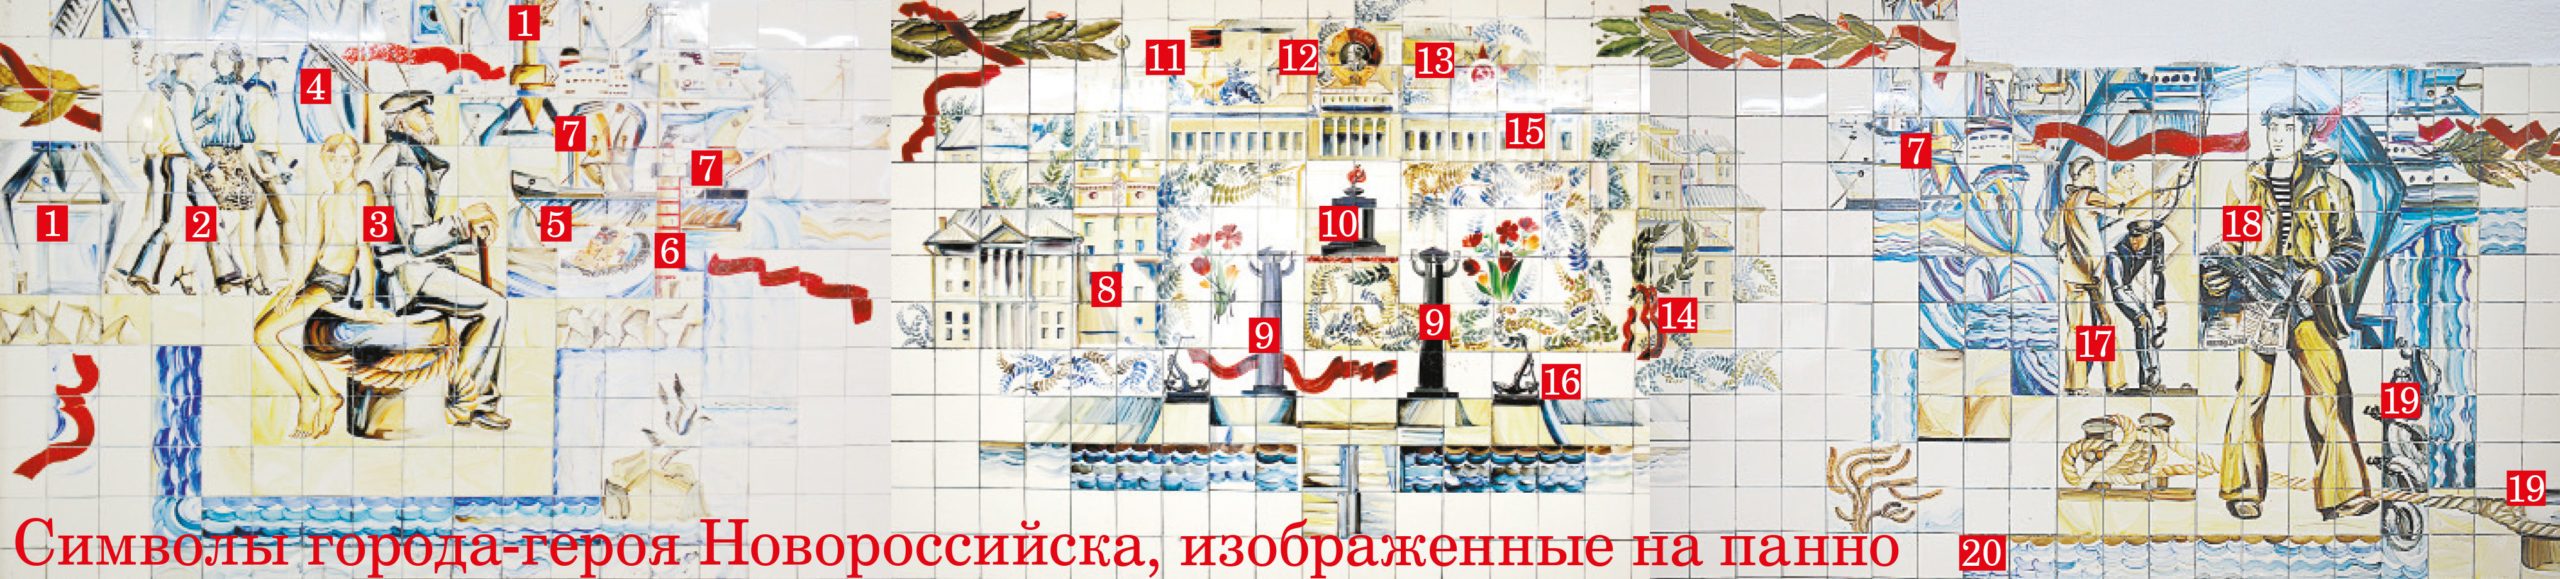 На мозаике в новороссийской "подземке" спрятано 20 символов города